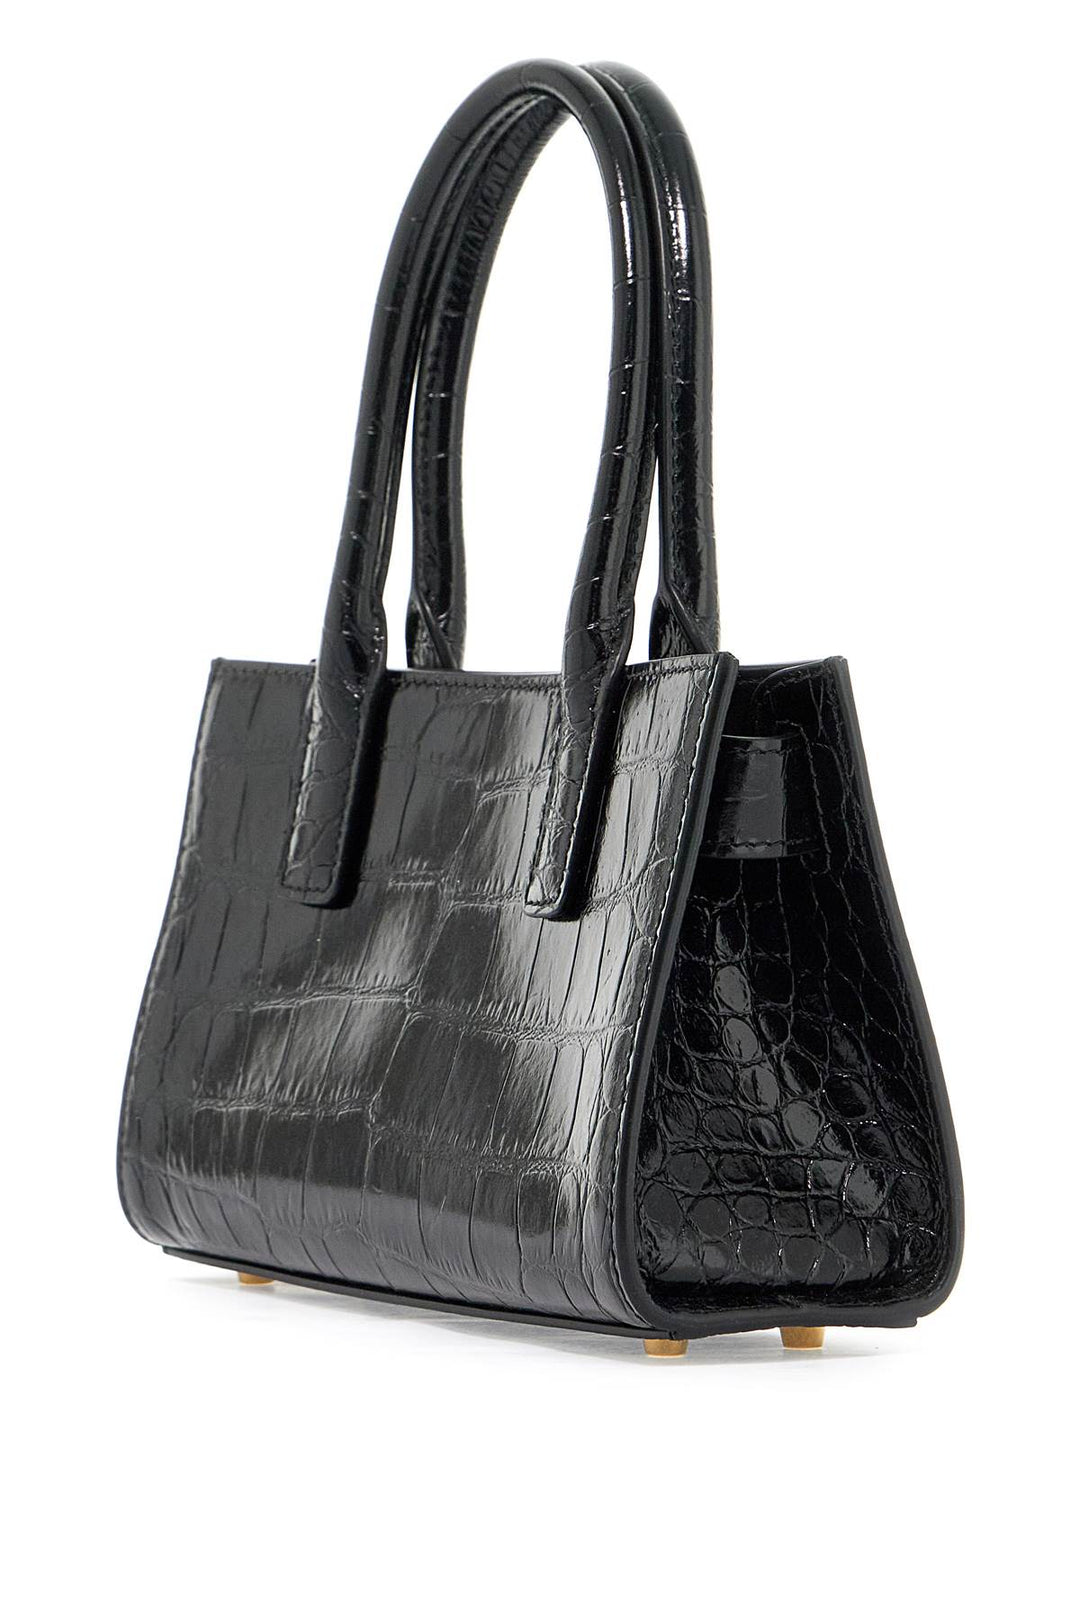 Versace Medusa '95 Handbag   Black